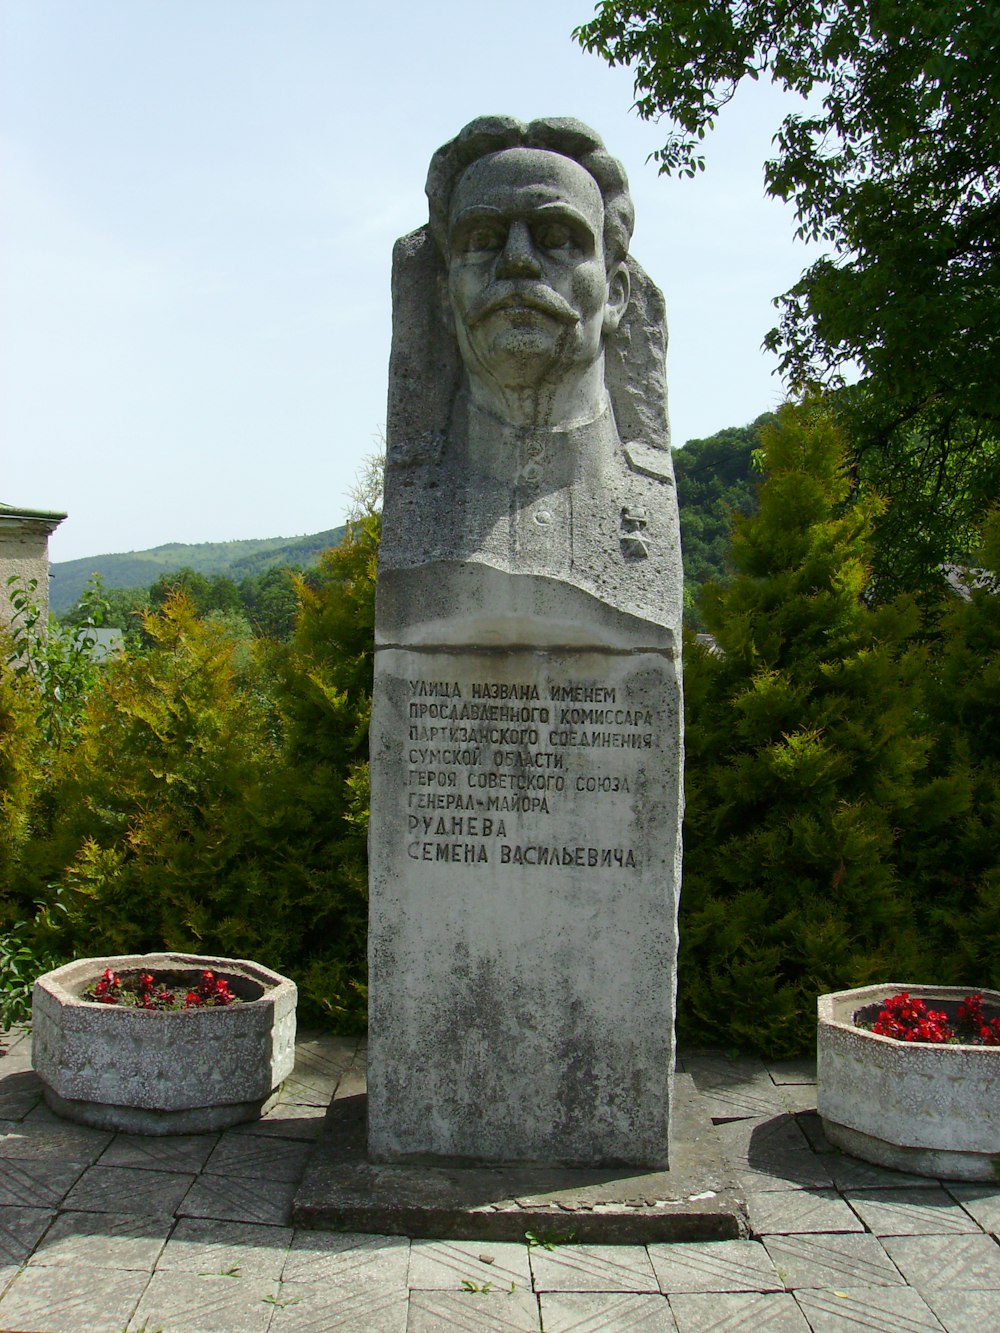 eine Statue eines Mannes mit Bart in einem Park